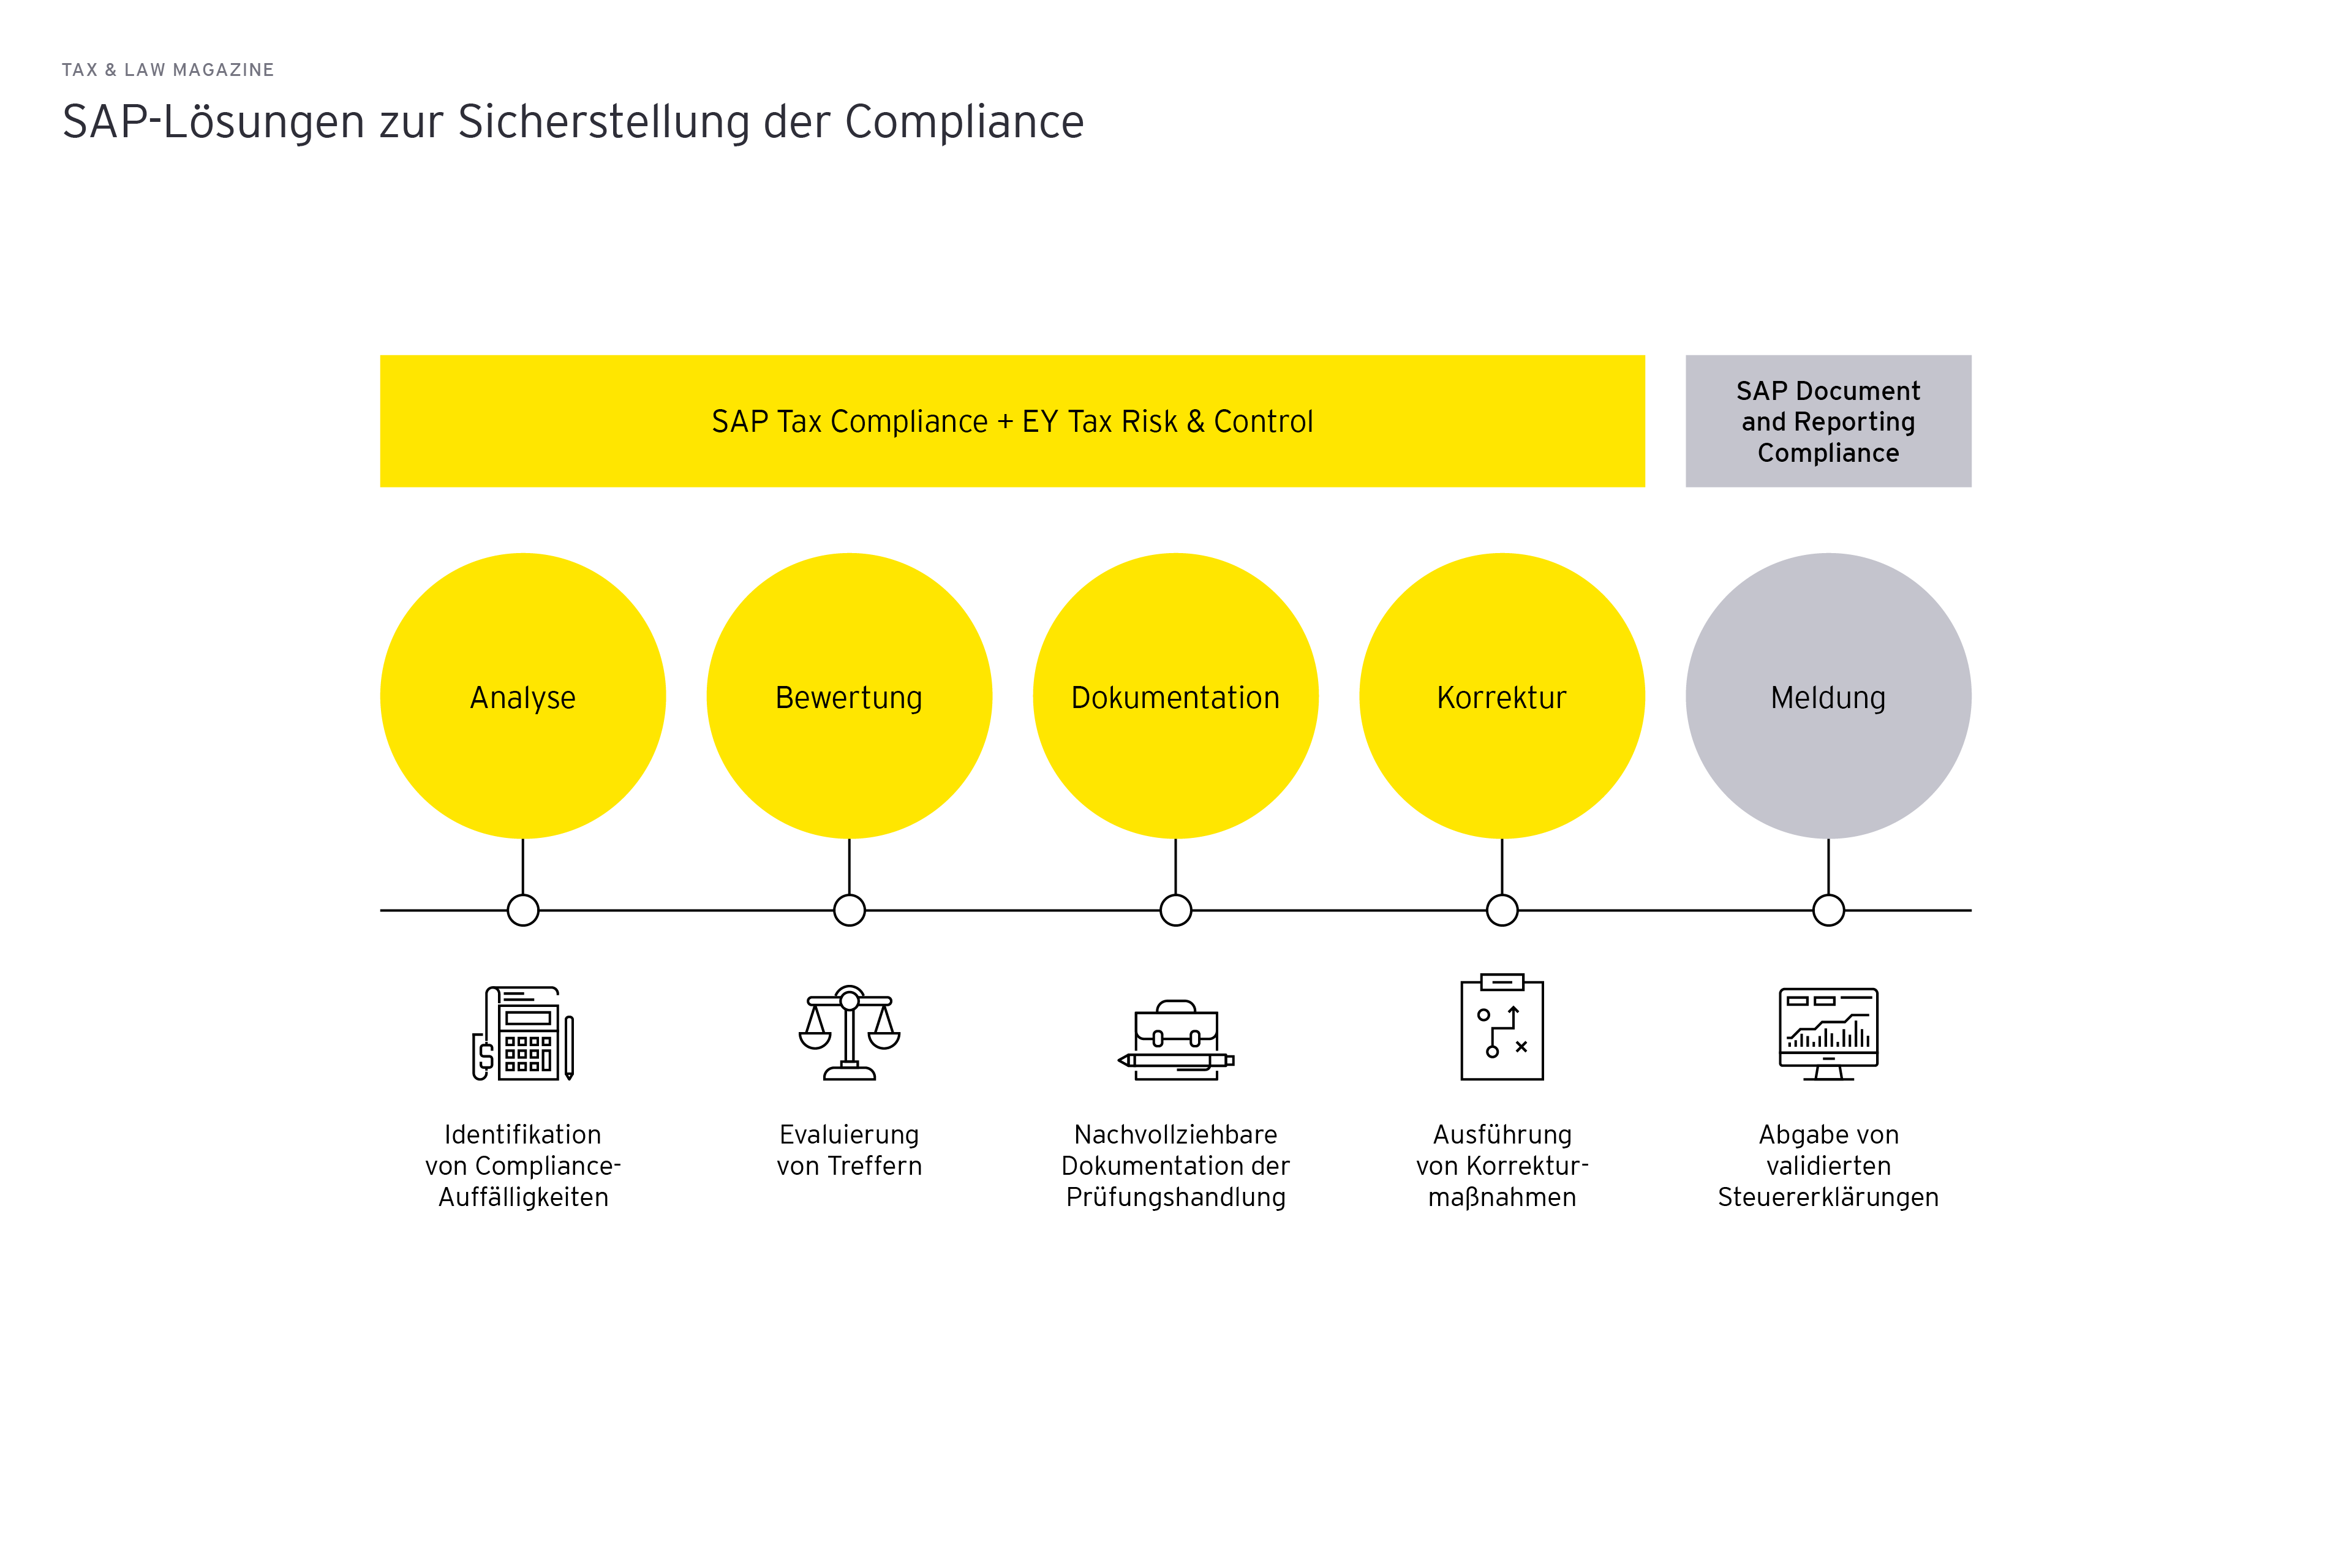 SAP-Loesungen zur Sicherstellung der Compliance